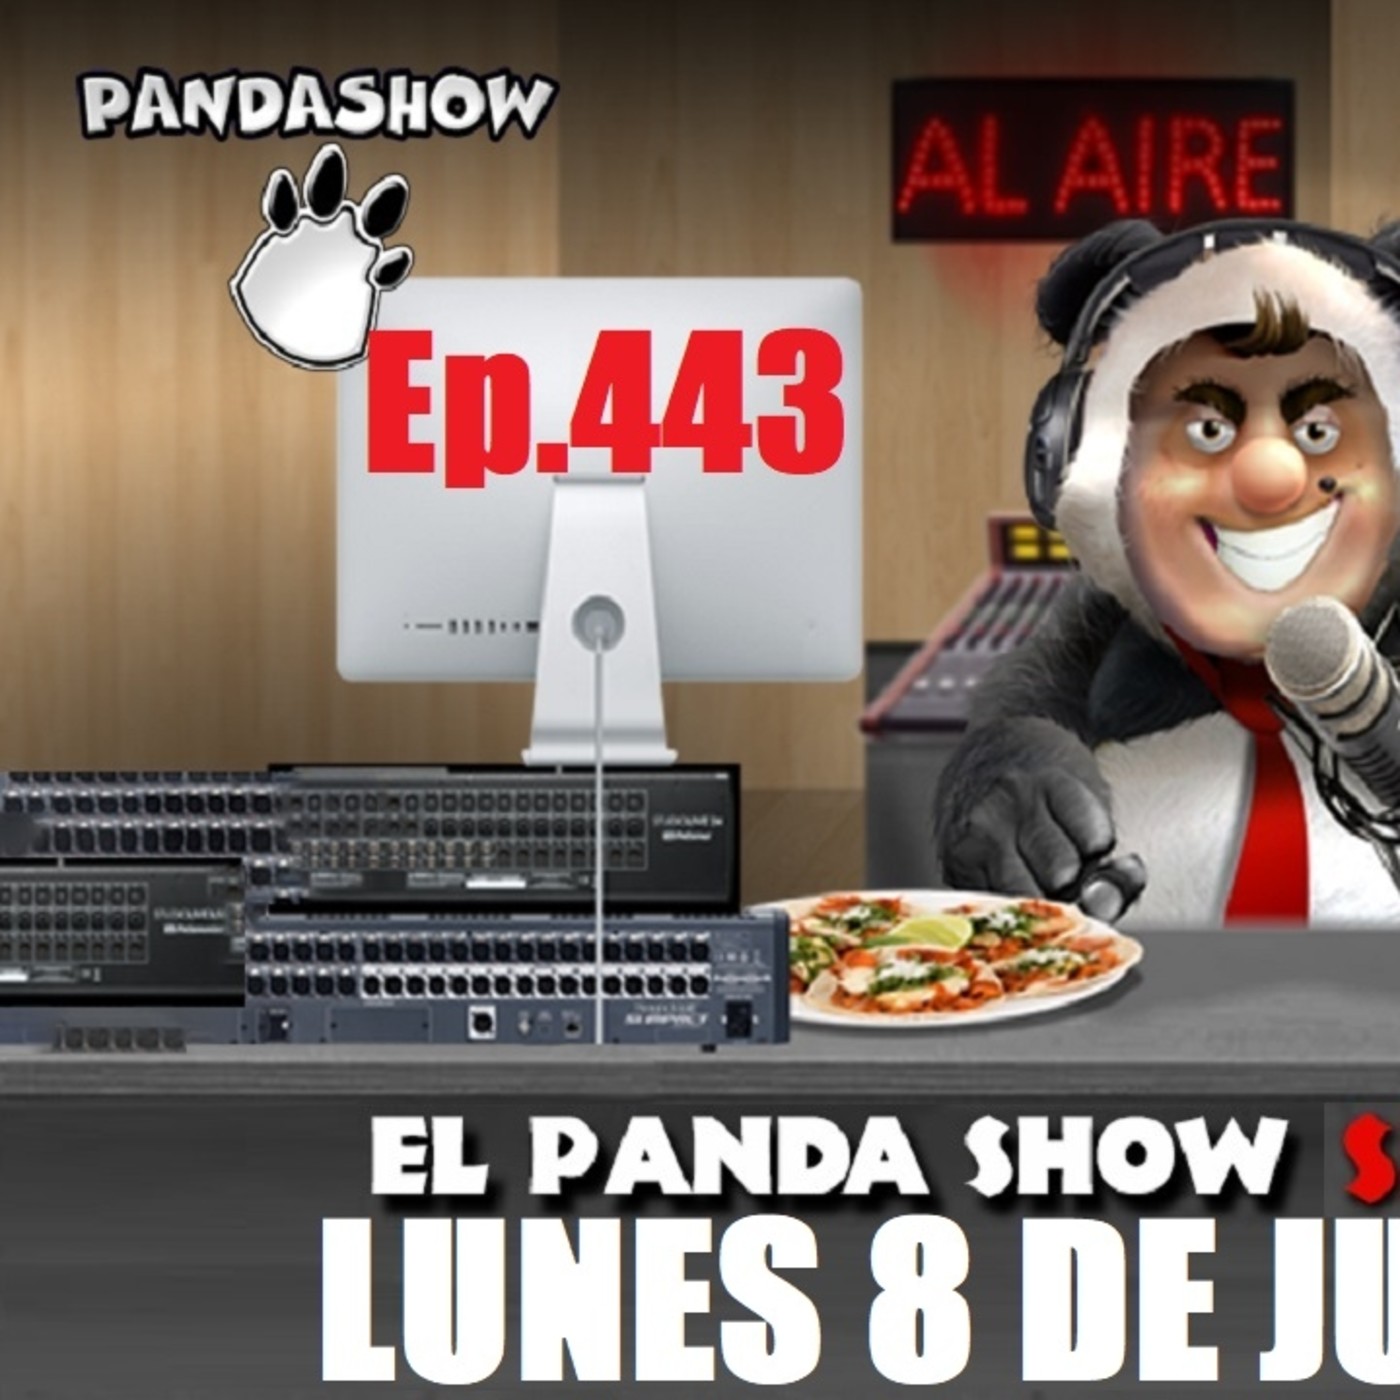 EL PANDA SHOW Ep. 443 LUNES 8 DE JUNIO 2020